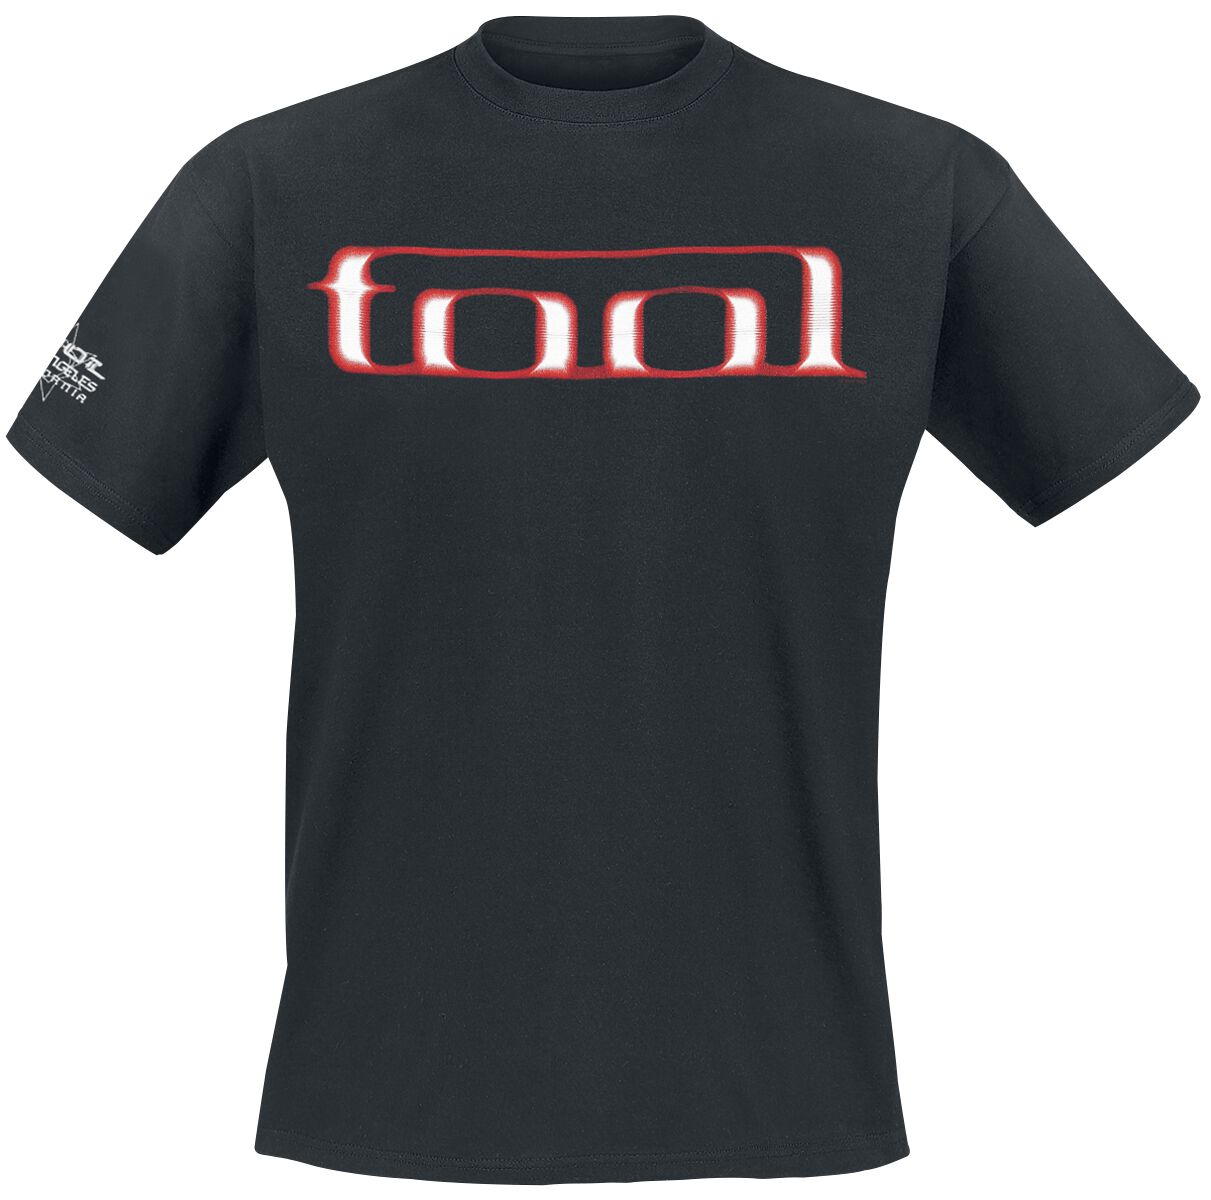 Tool T-Shirt - Grid Skull - S bis XXL - für Männer - Größe S - schwarz  - Lizenziertes Merchandise!